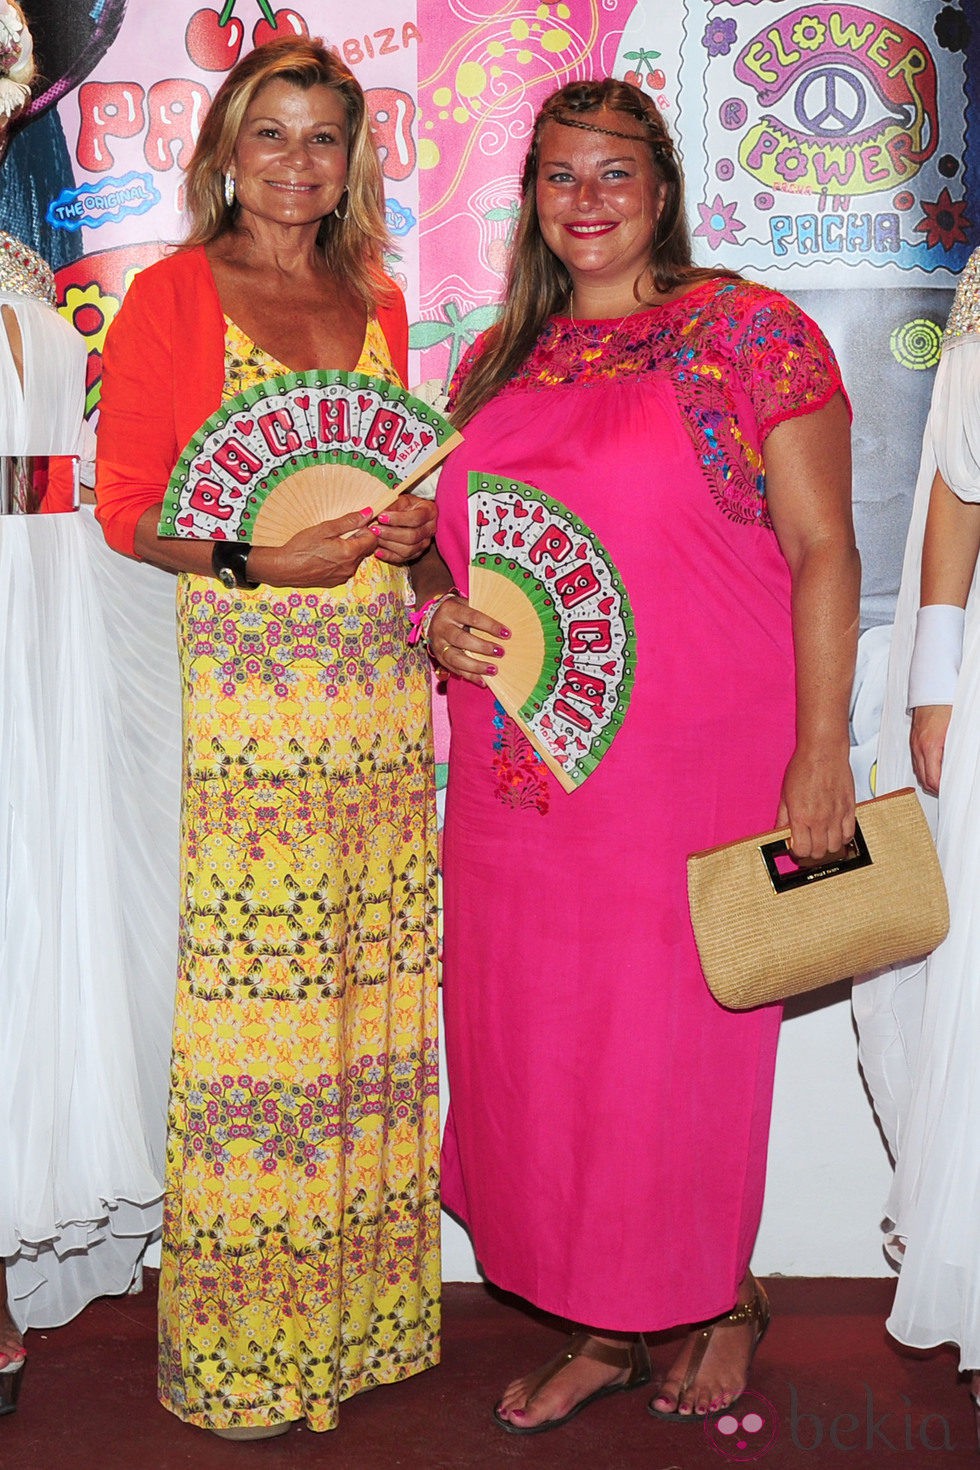 Caritina Goyanes y Cari Lapique en la fiesta Flower Power de Ibiza 2013